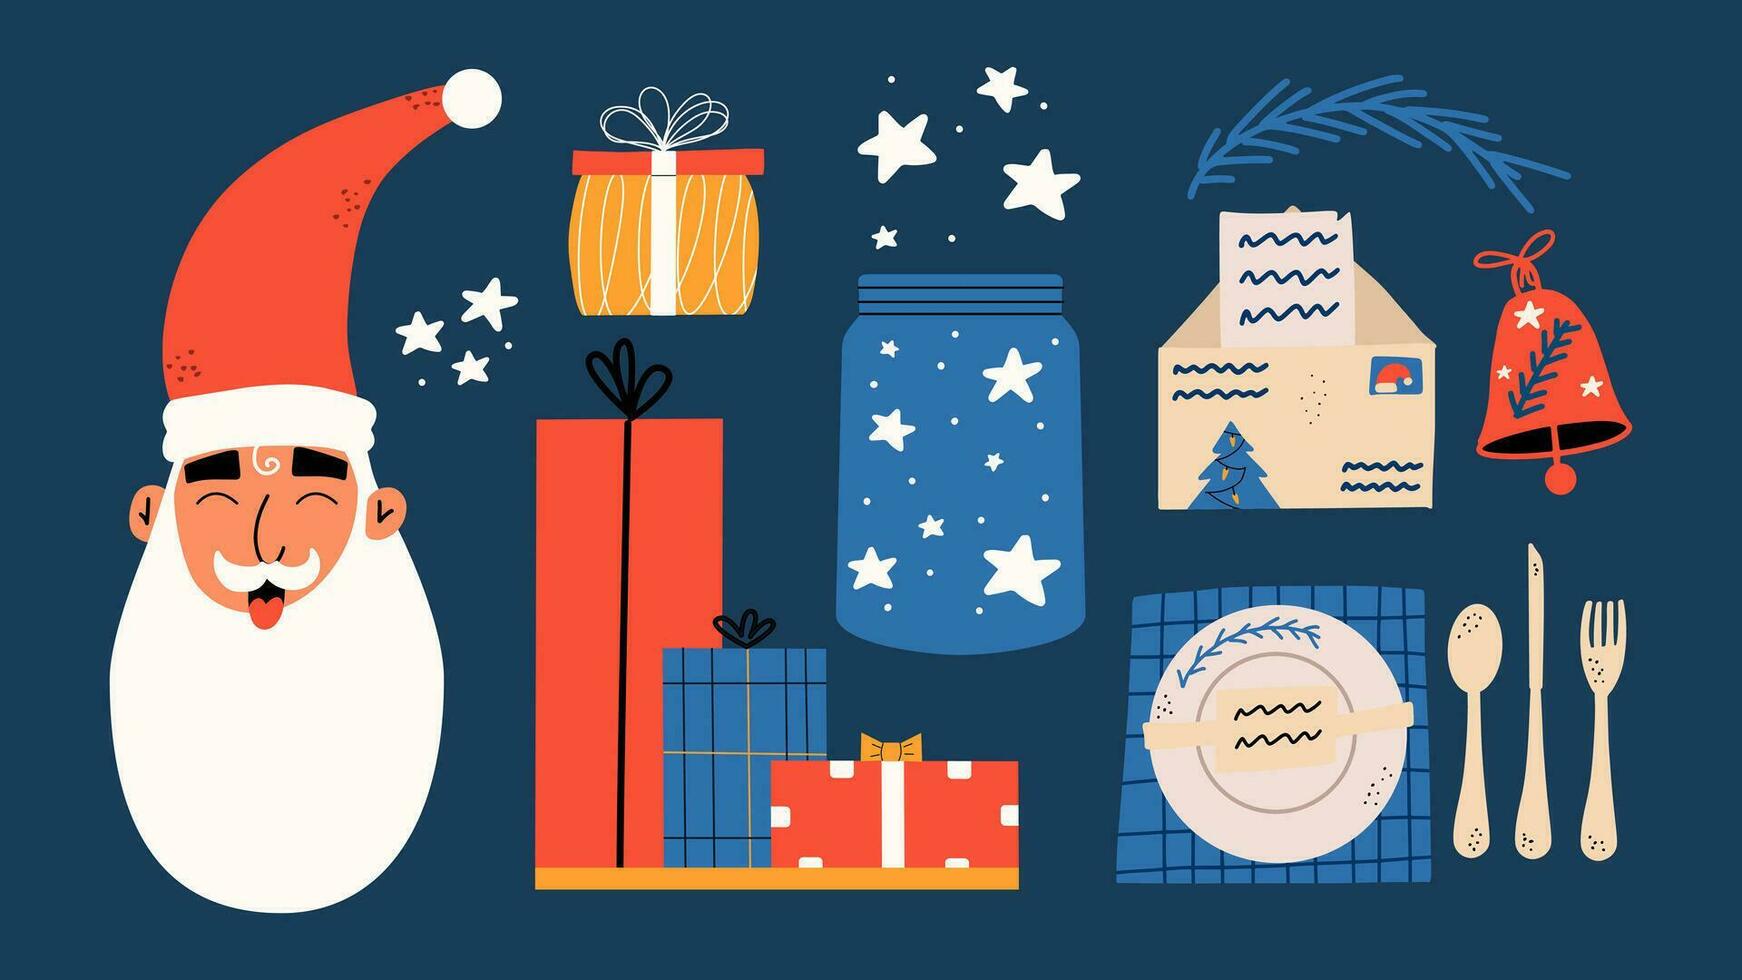 Natale impostare. babbo natale, tavolo ambientazione, regalo scatole, campana, vaso con stelle. mano disegnare illustrazione vettore